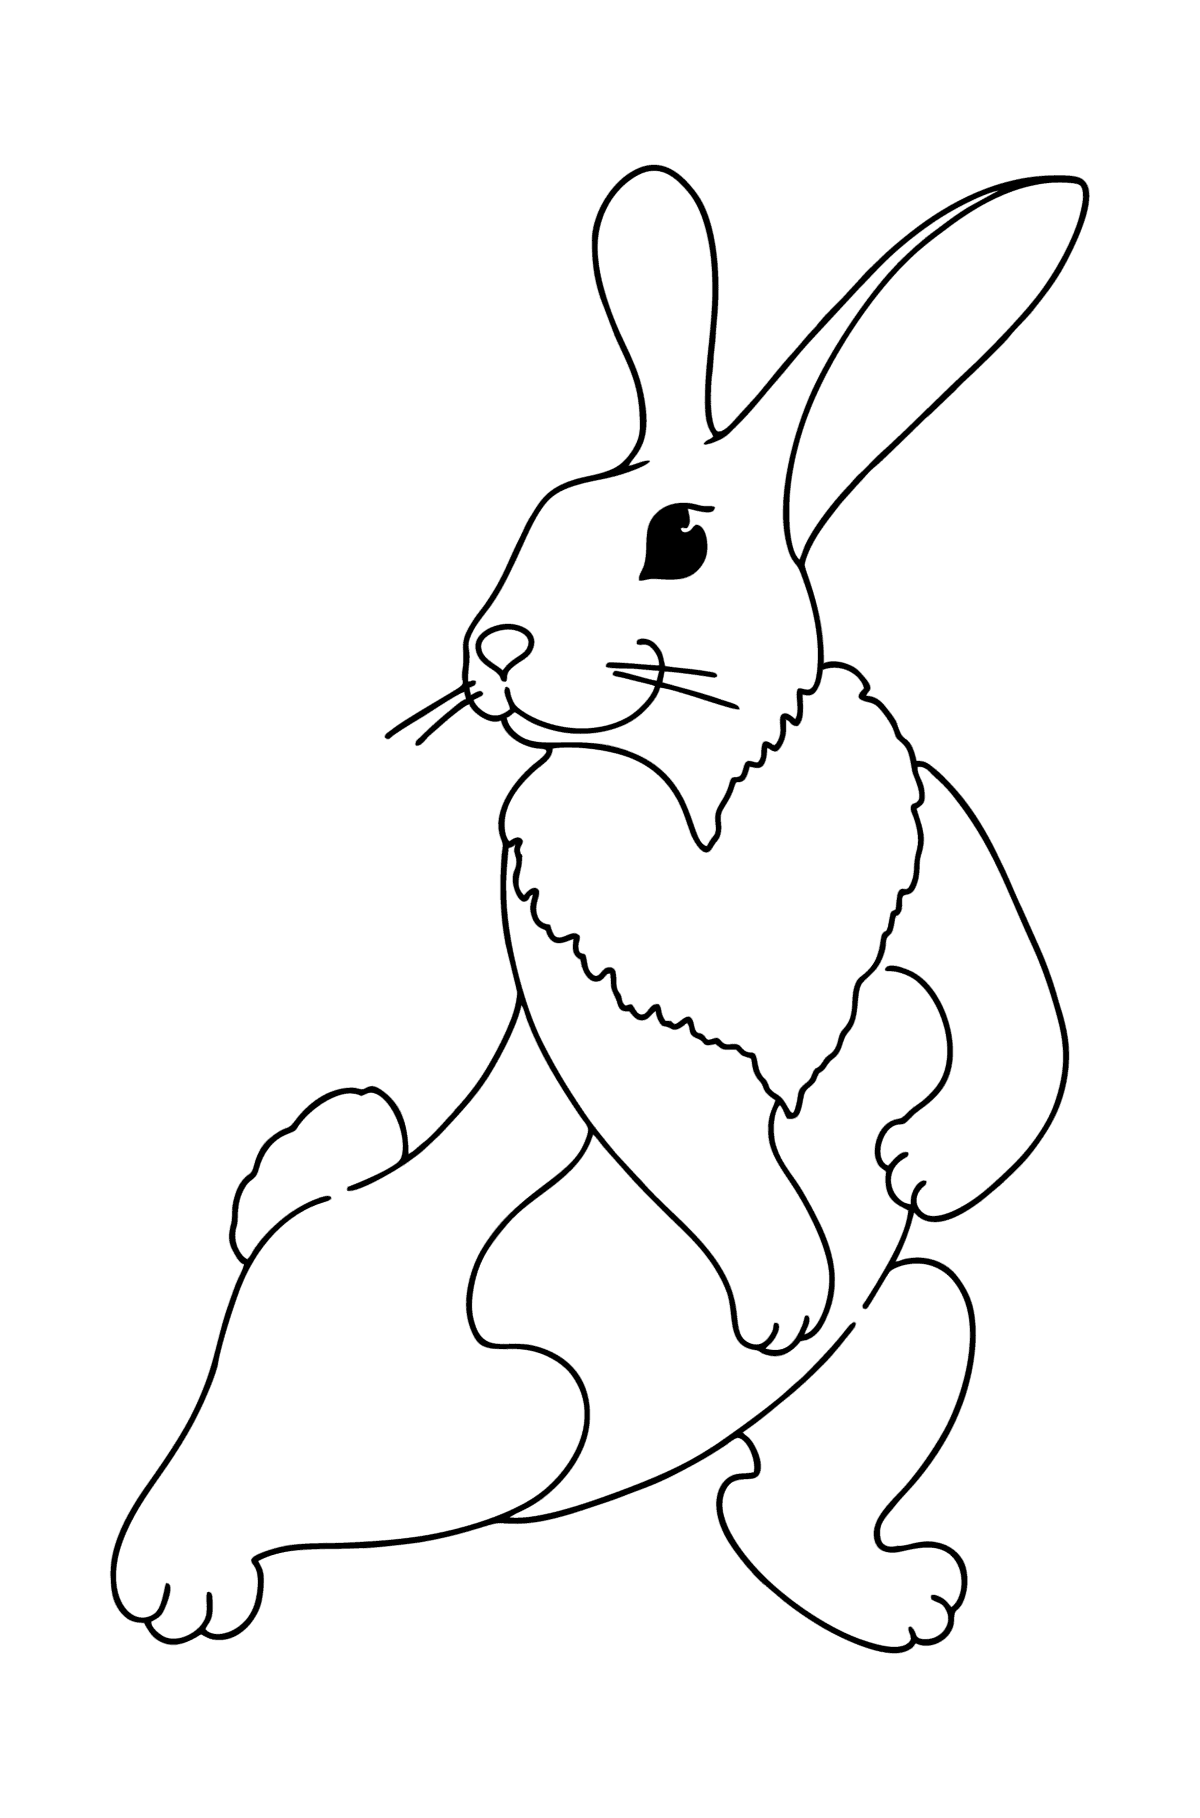 Boyama sayfası oynak tavşan - Boyamalar çocuklar için